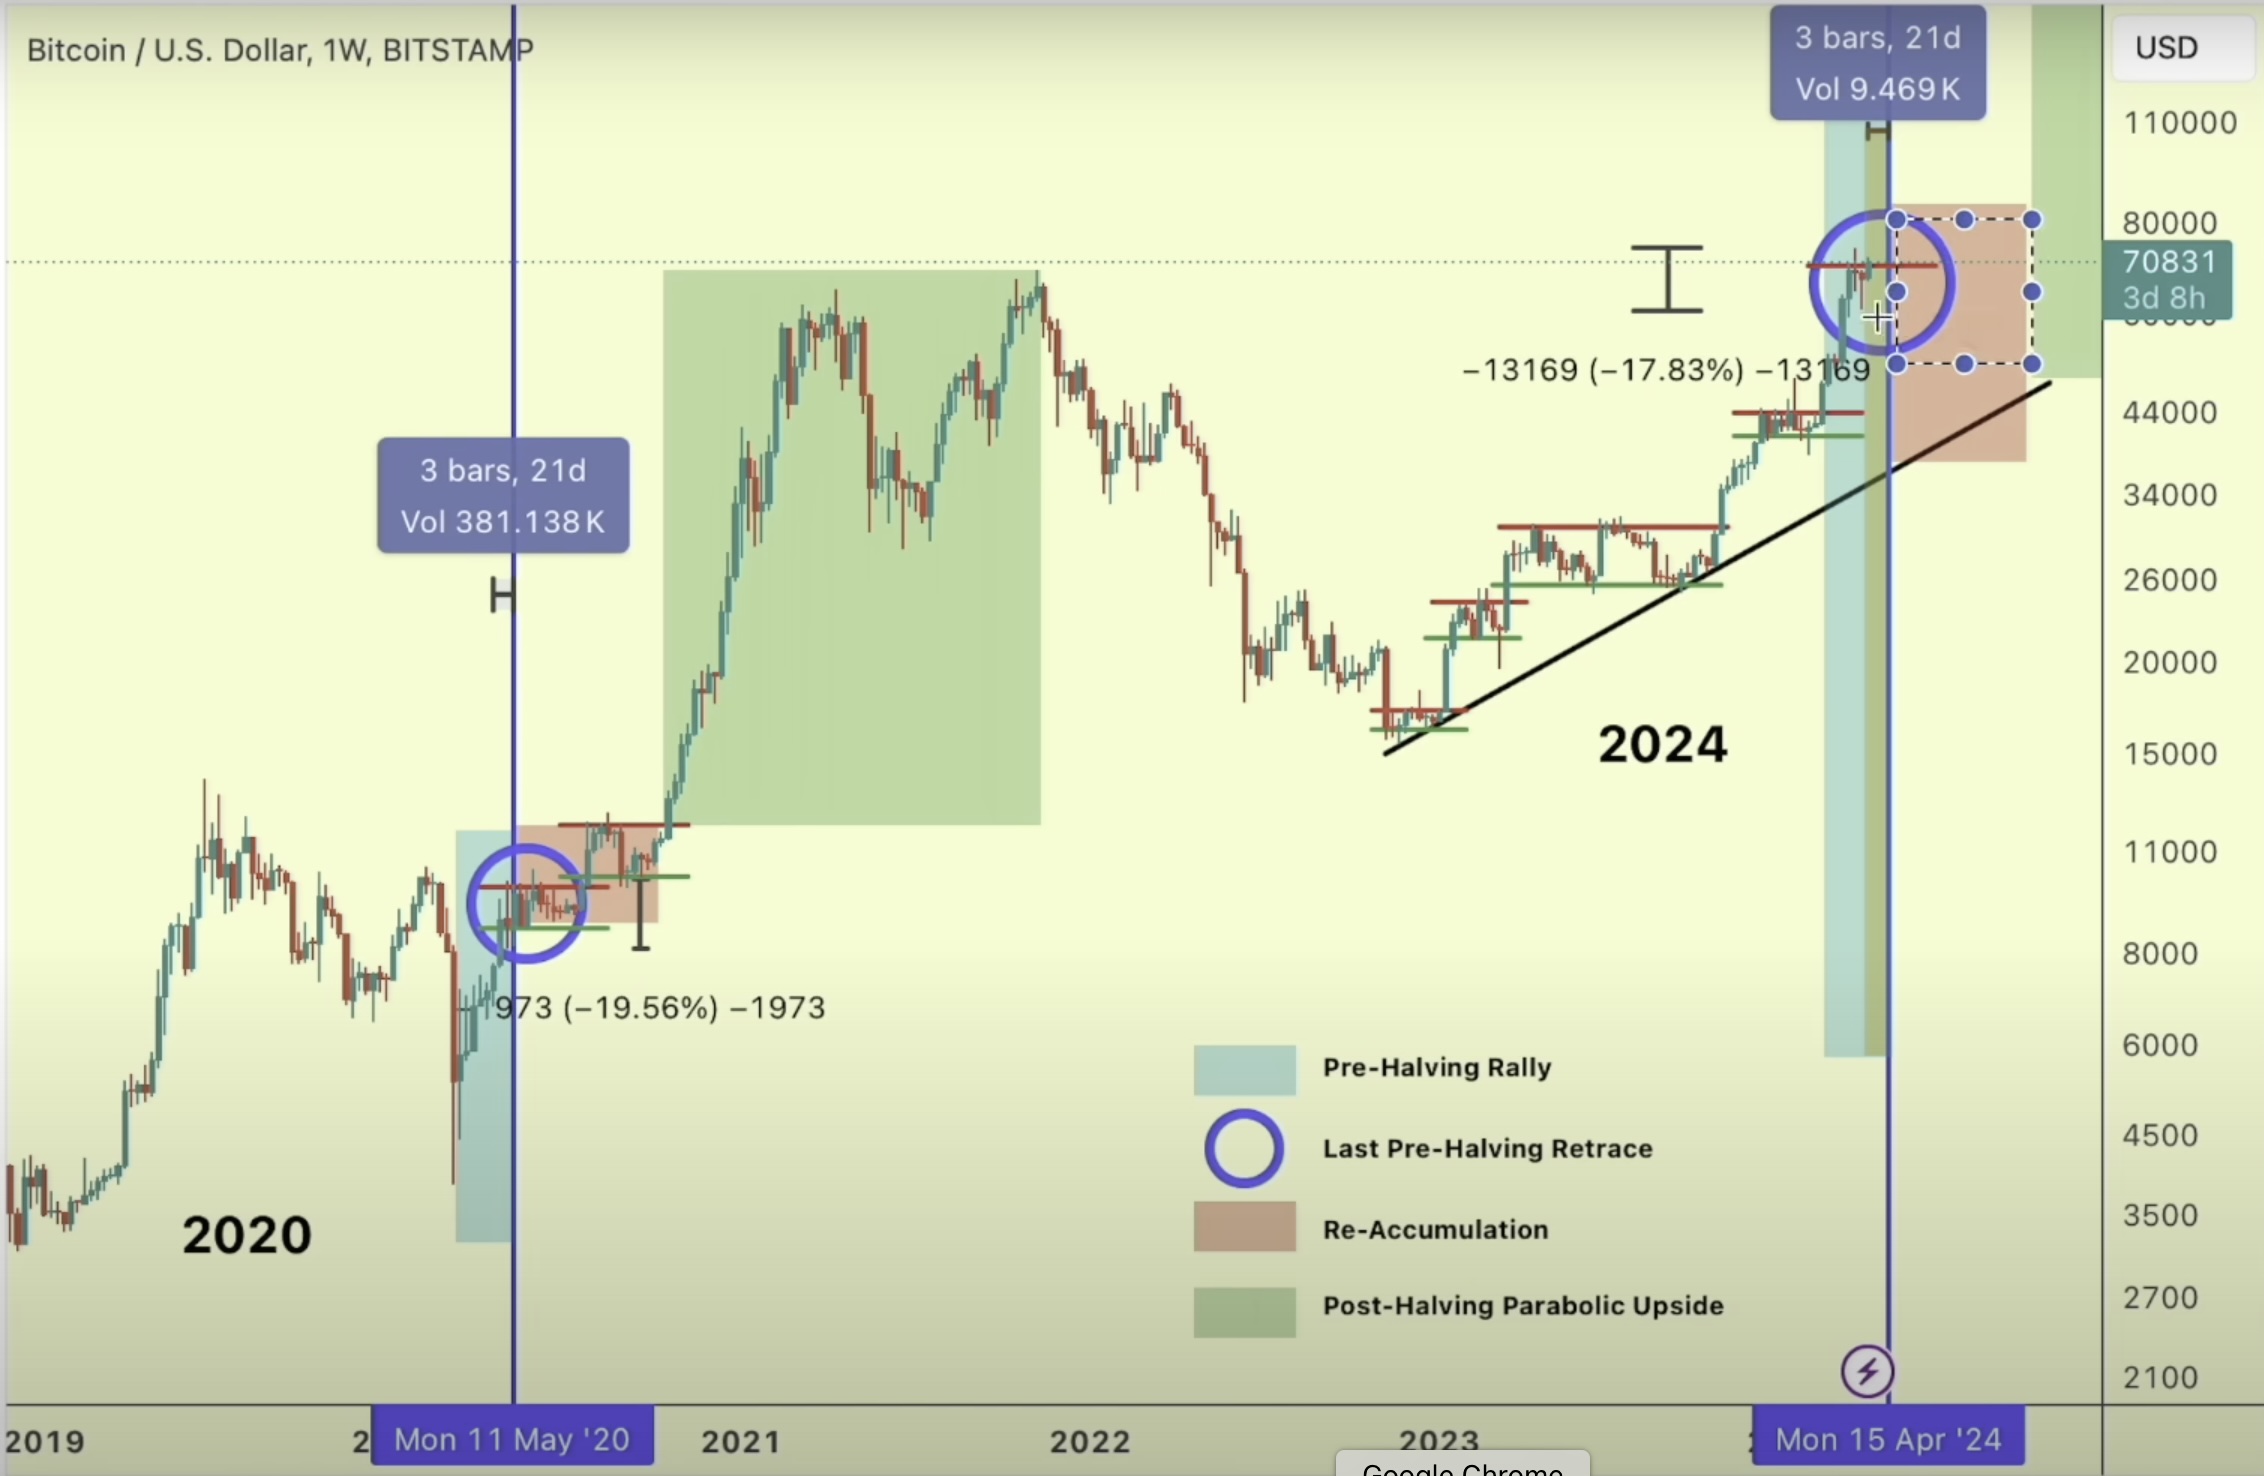 Bitcoin offre opportunità di "ultimo affare" prima che scoppi il rally parabolico, afferma il trader - Ecco la cronologia - The Daily Hodl